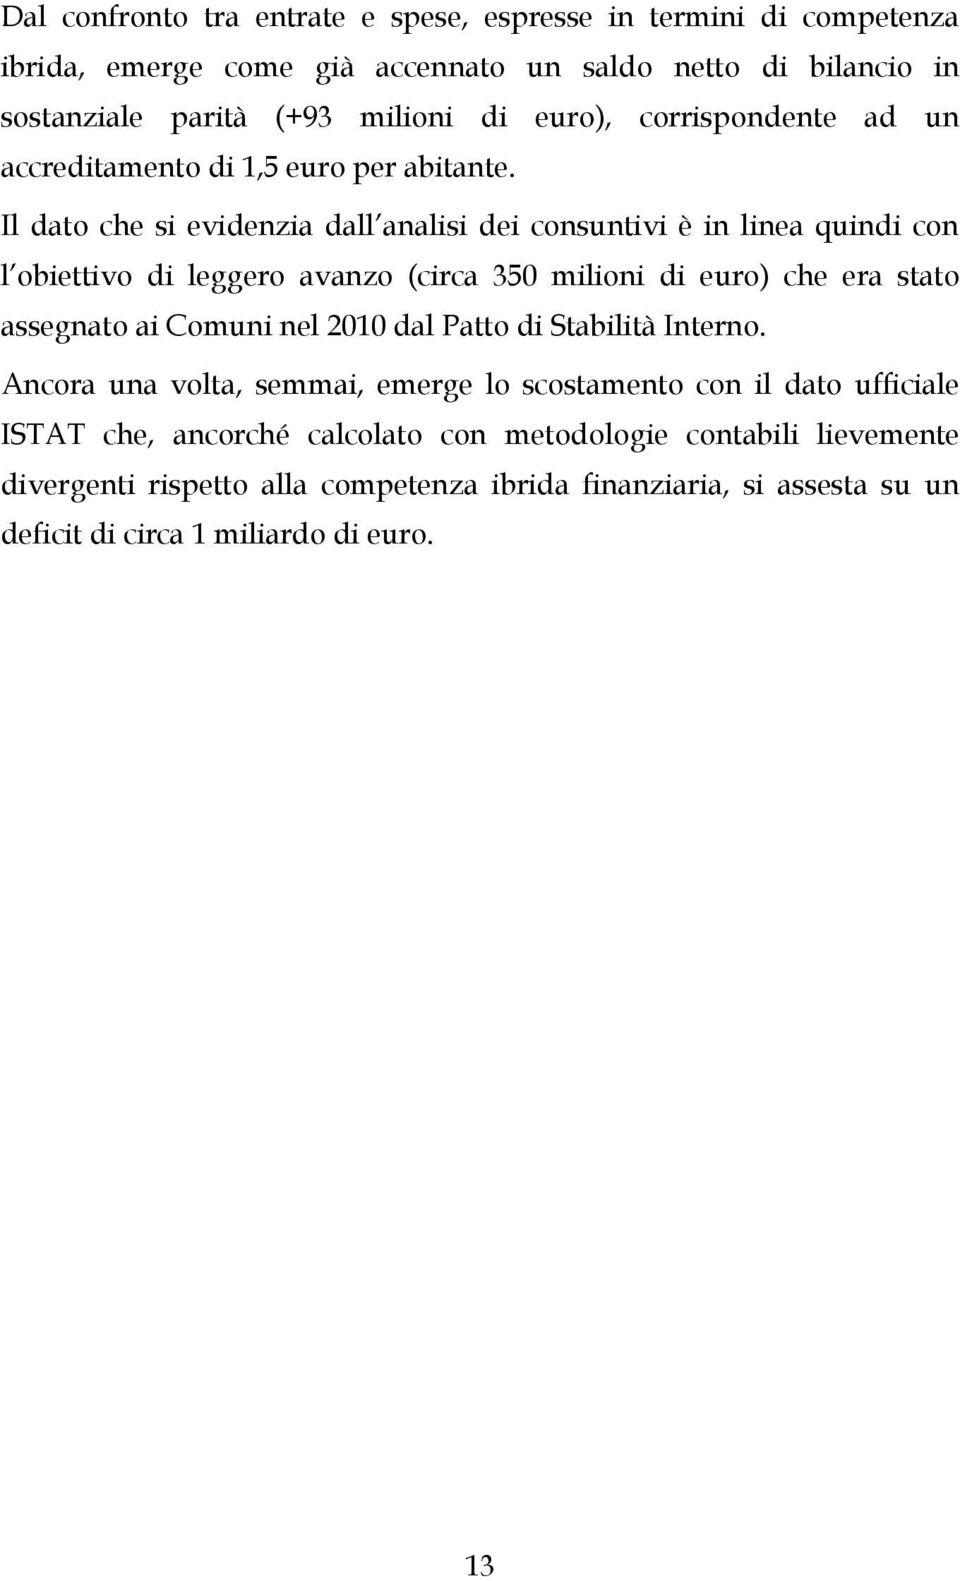 Il dato che si evidenzia dall analisi dei consuntivi è in linea quindi con l obiettivo di leggero avanzo (circa 350 milioni di euro) che era stato assegnato ai Comuni nel